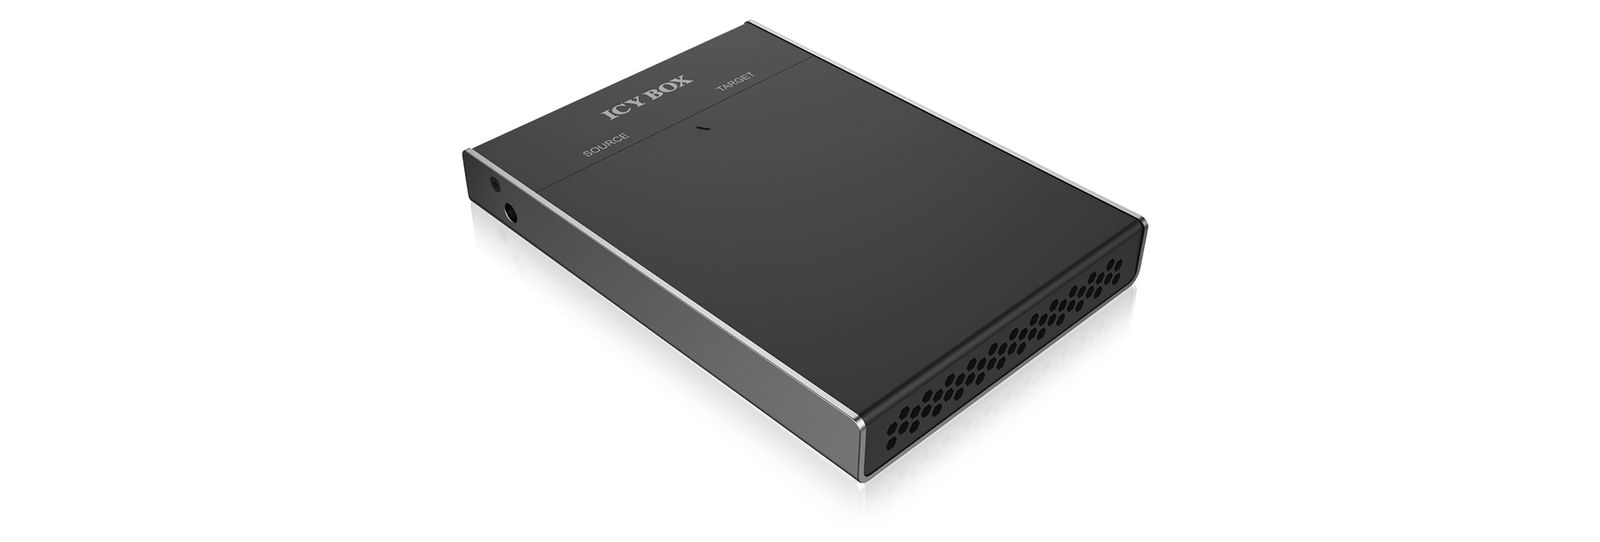 ICY BOX 60528 Box 2-fach m.2 Dockingstation mit Klonfunktion für m.2 SATA SSD, USB 3.0, B-Key, B+M-Key